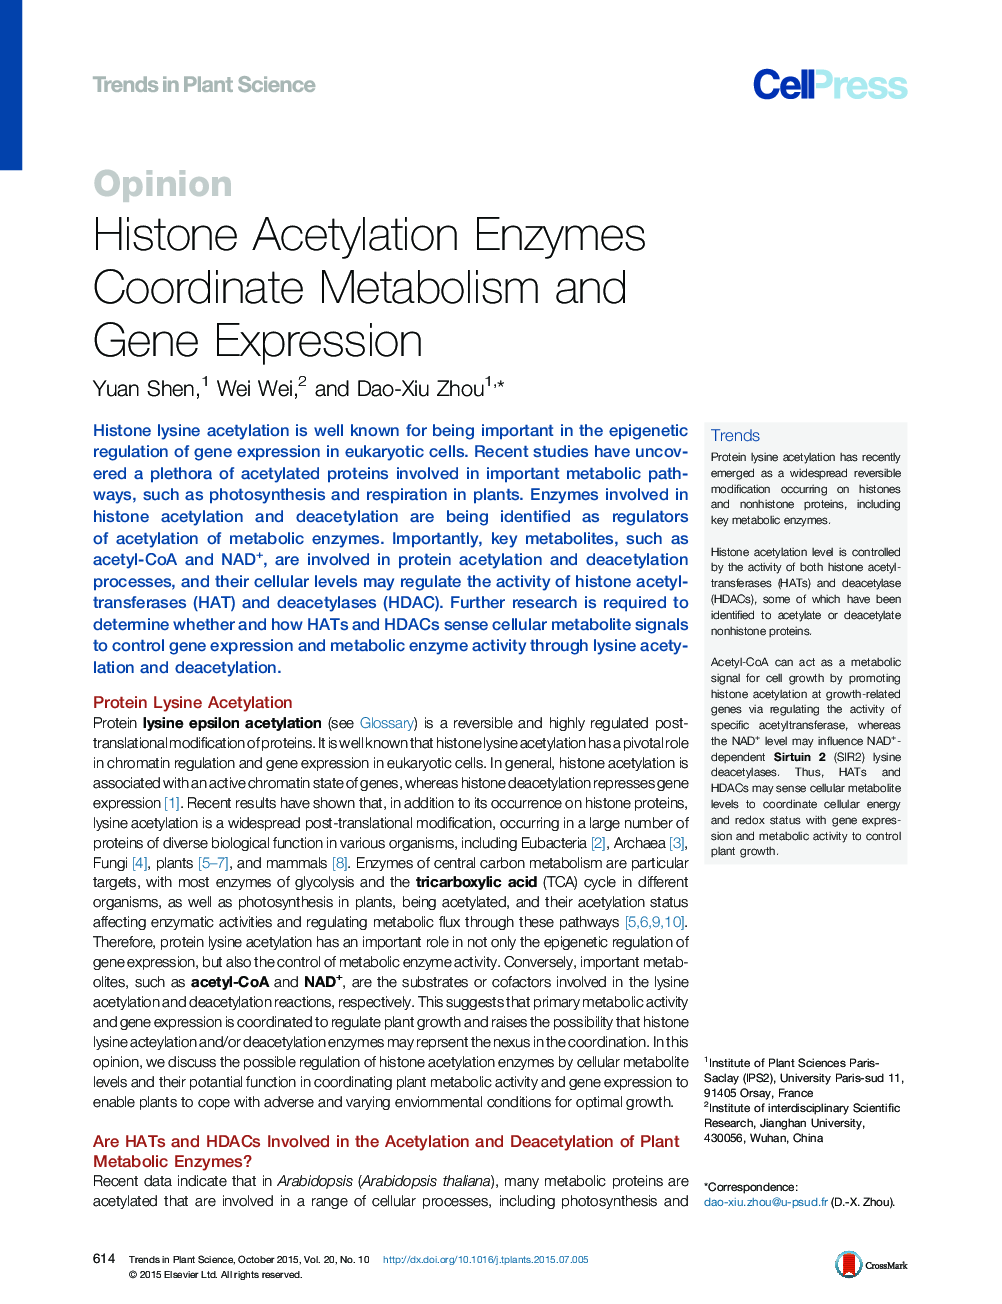 آنزیم استیل شدن هیستون متابولیسم هماهنگ و بیان ژن 